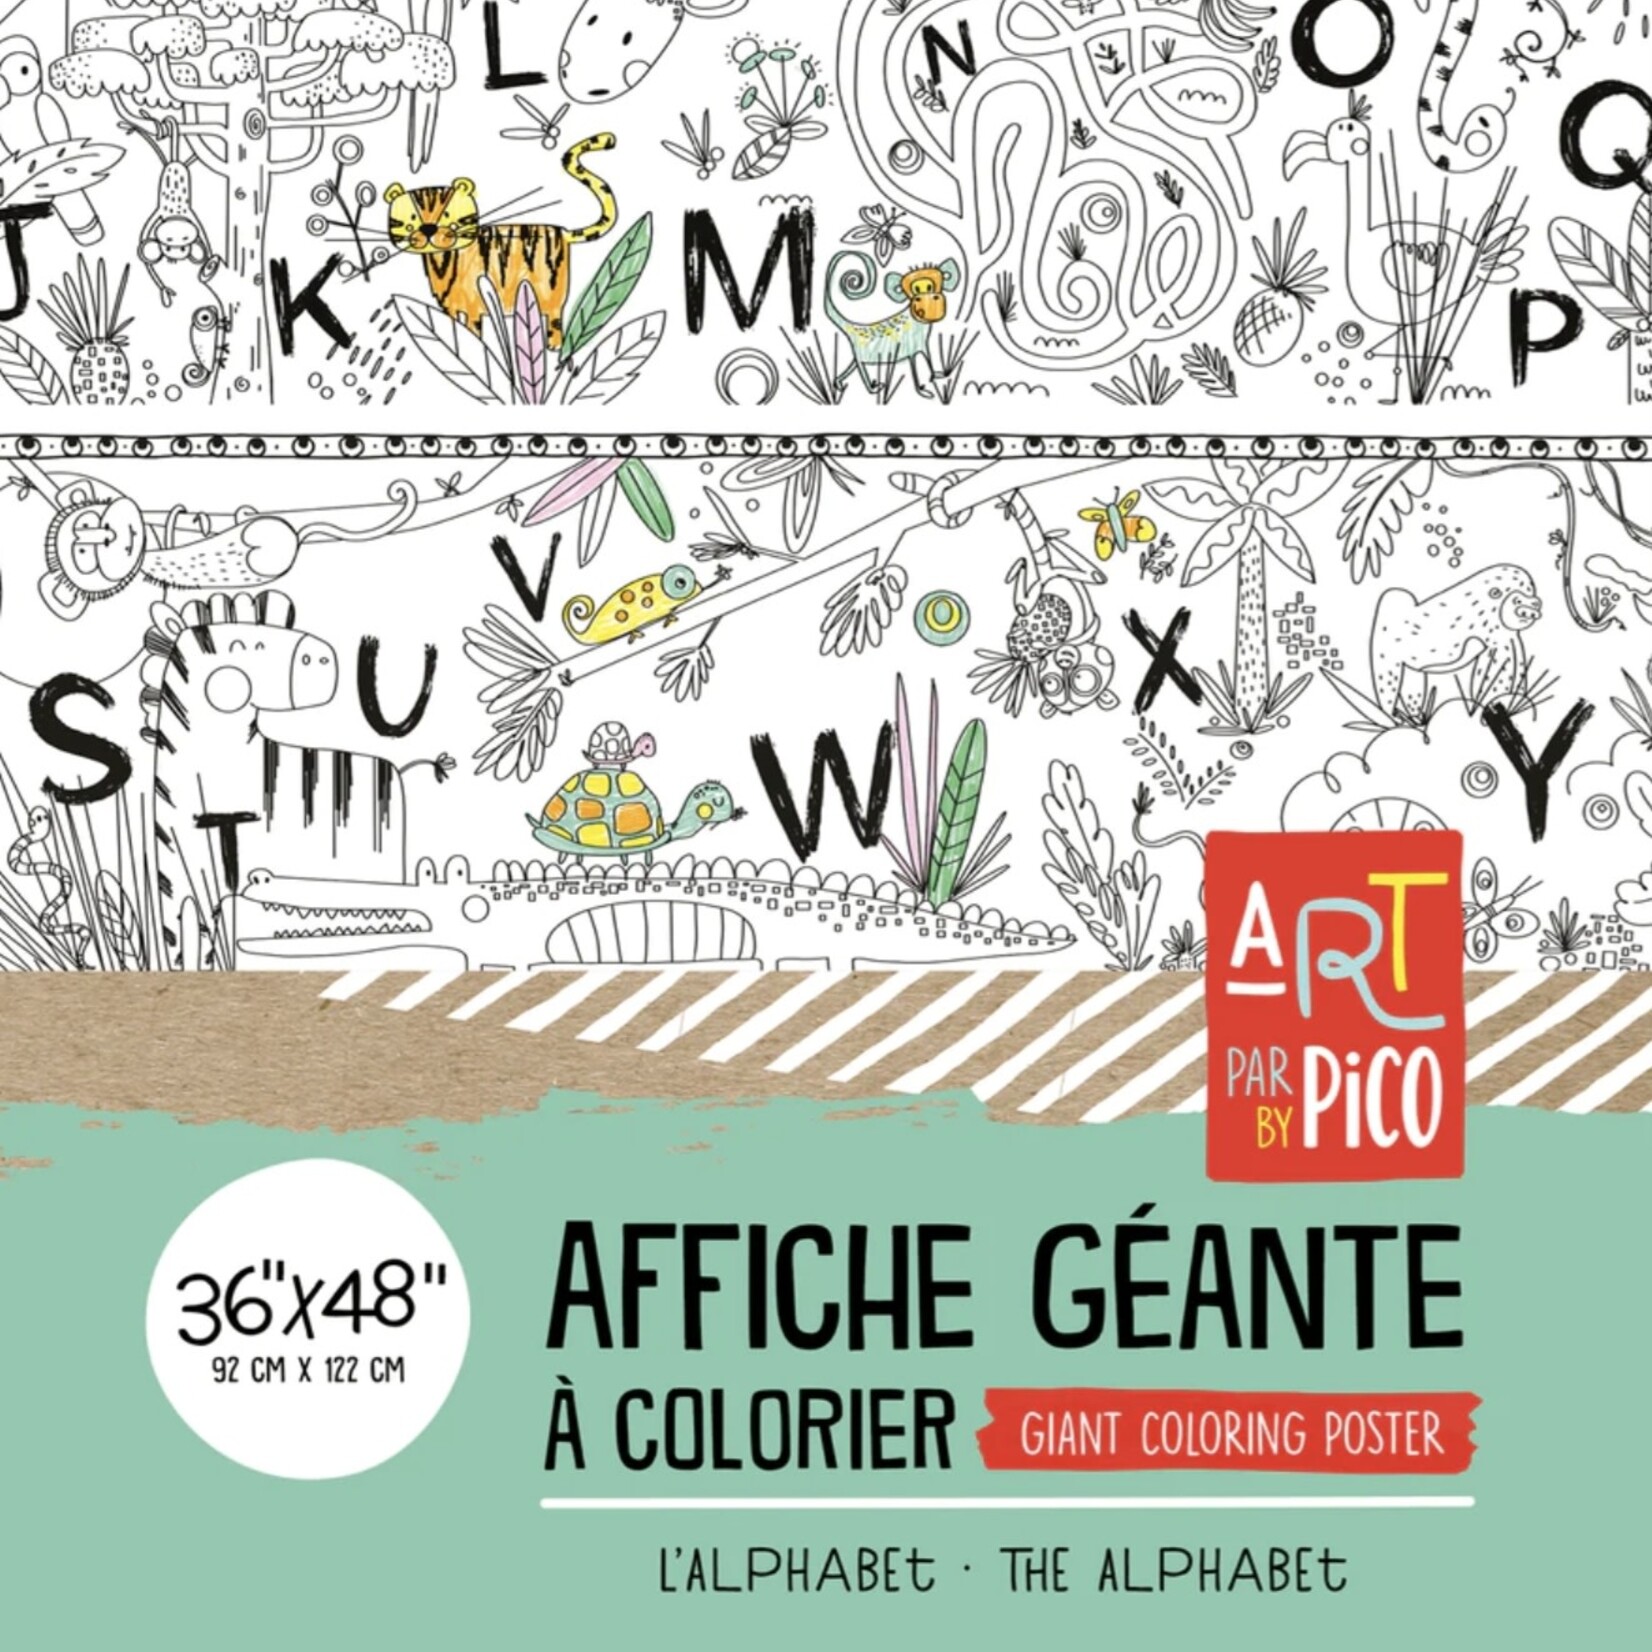 Coloriage - Posters / Affiches Géantes à Colorier – PiCO Tatoo